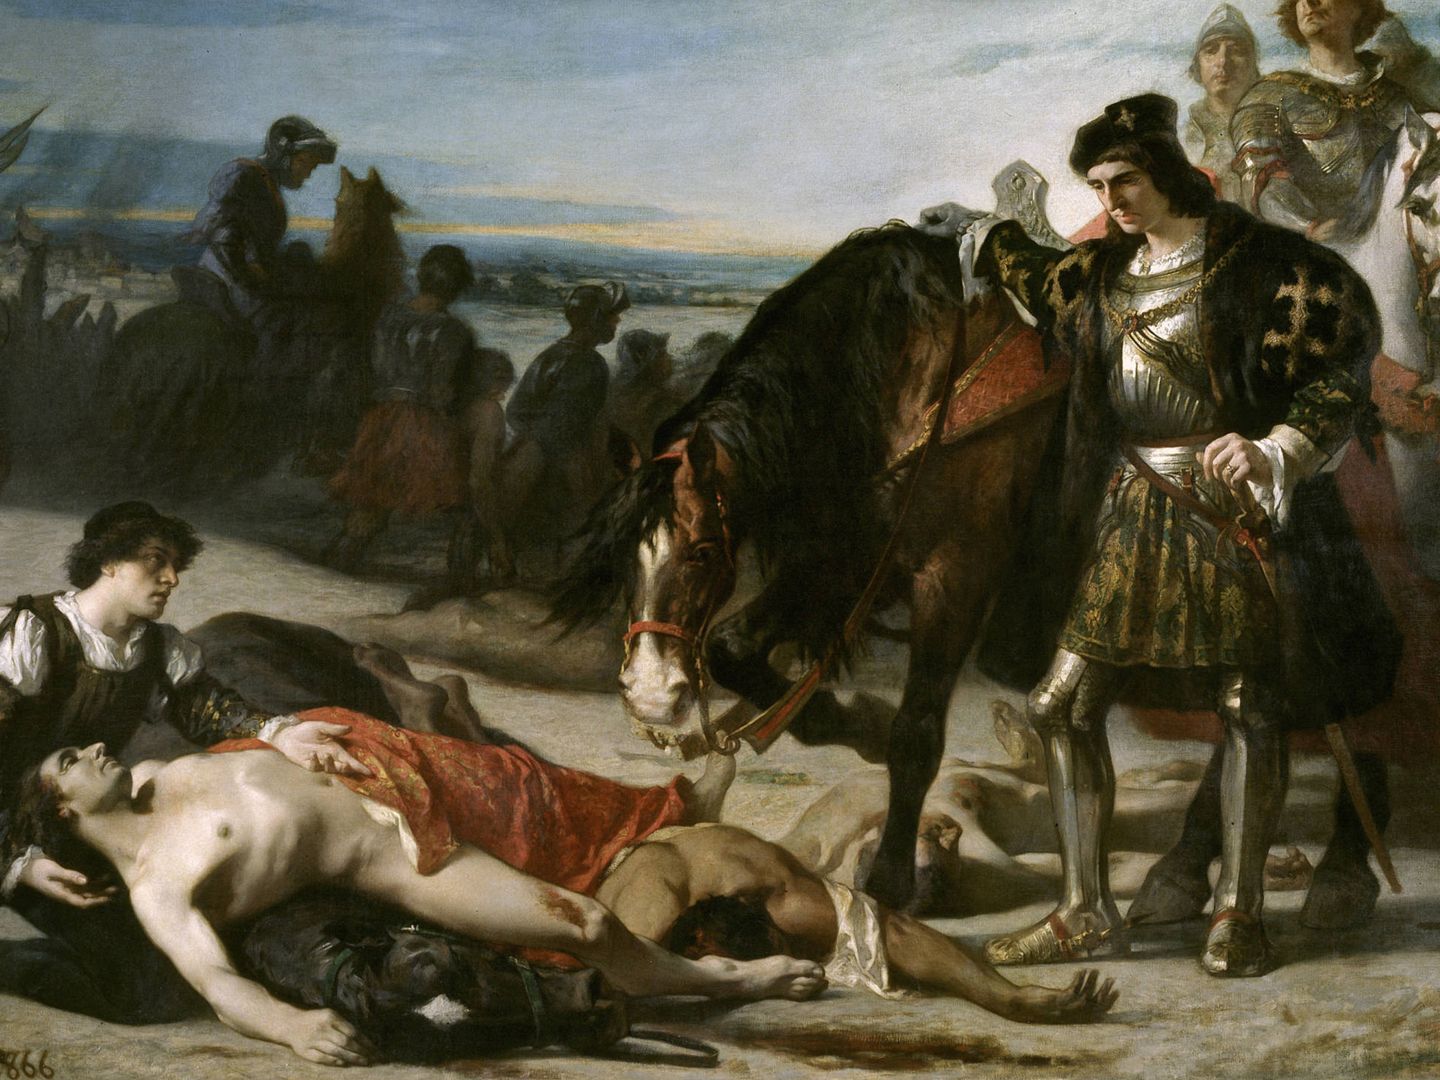 'El Gran Capitán Contemplando el cadáver del Duque de Nemours' - José Casado del Alisal (1866)